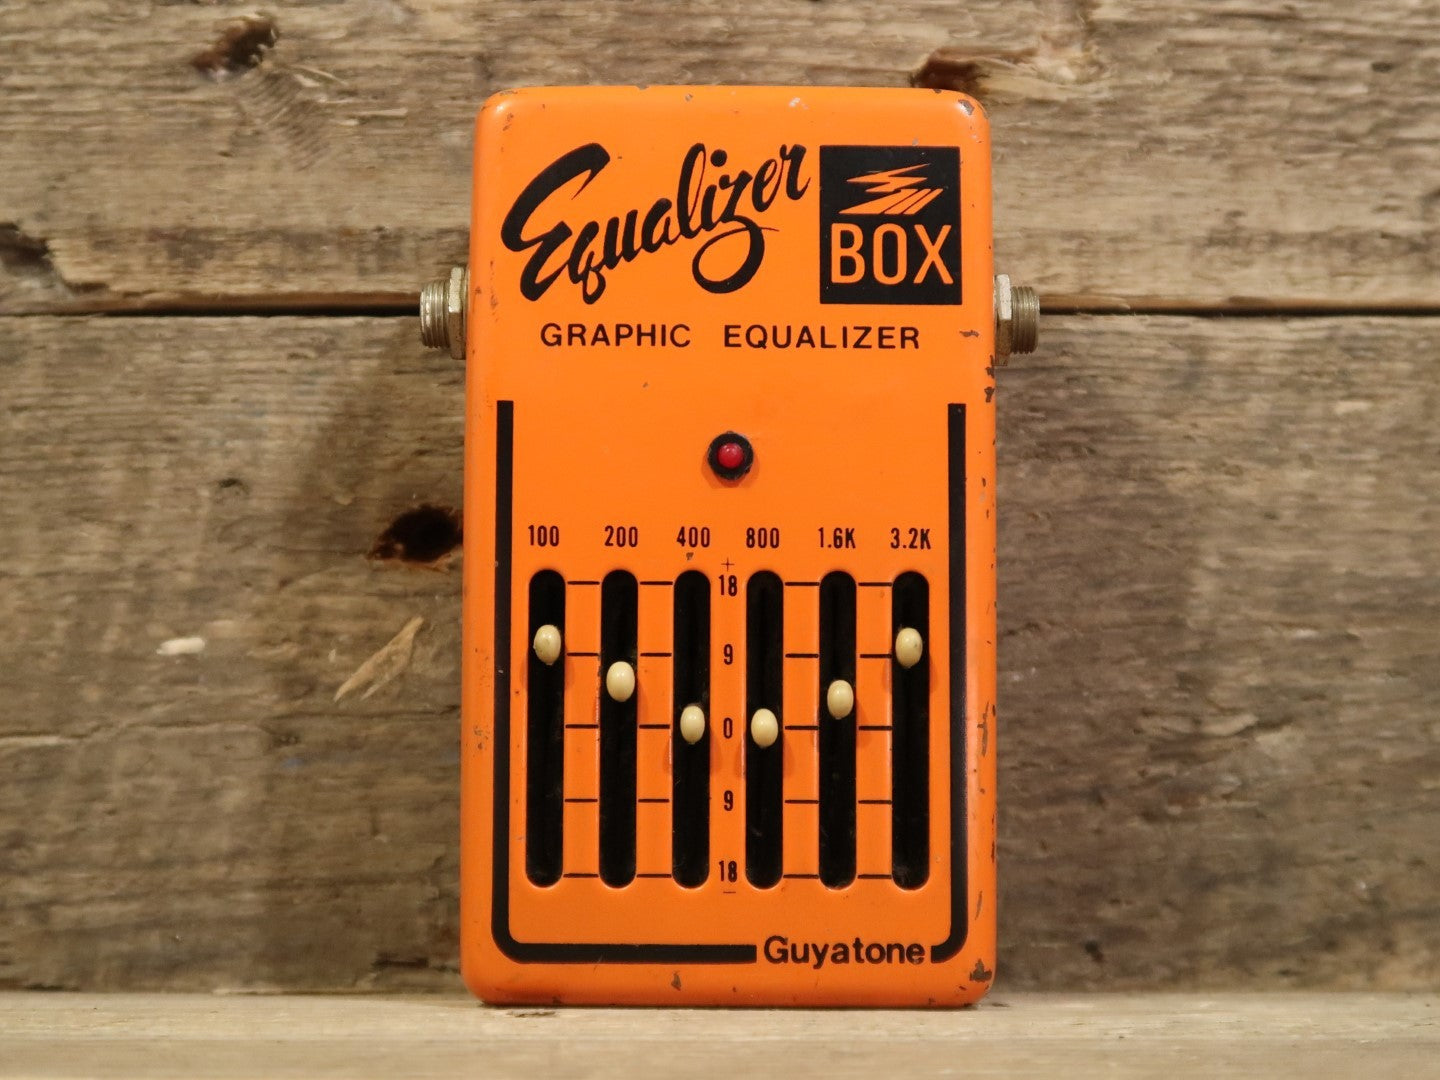 GuitarFX | Used Equalizer Pedals for Precise Sound Control - Shop Now